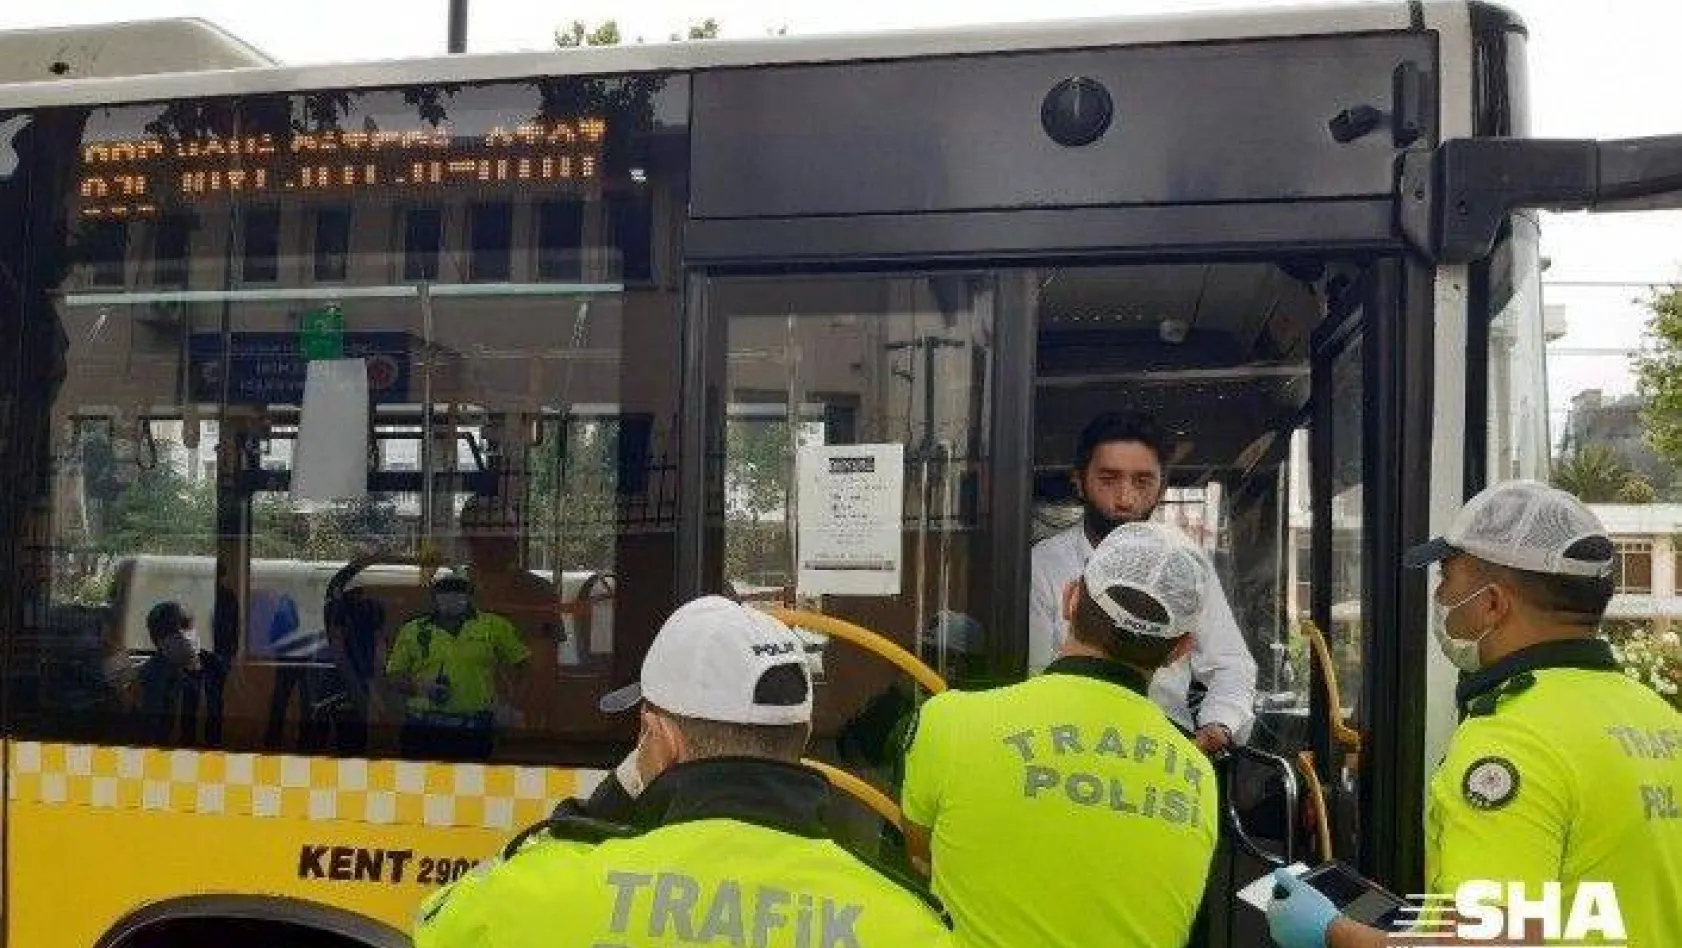 İstanbul'da toplu taşıma araçları ve ticari taksilere korona virüs denetimi